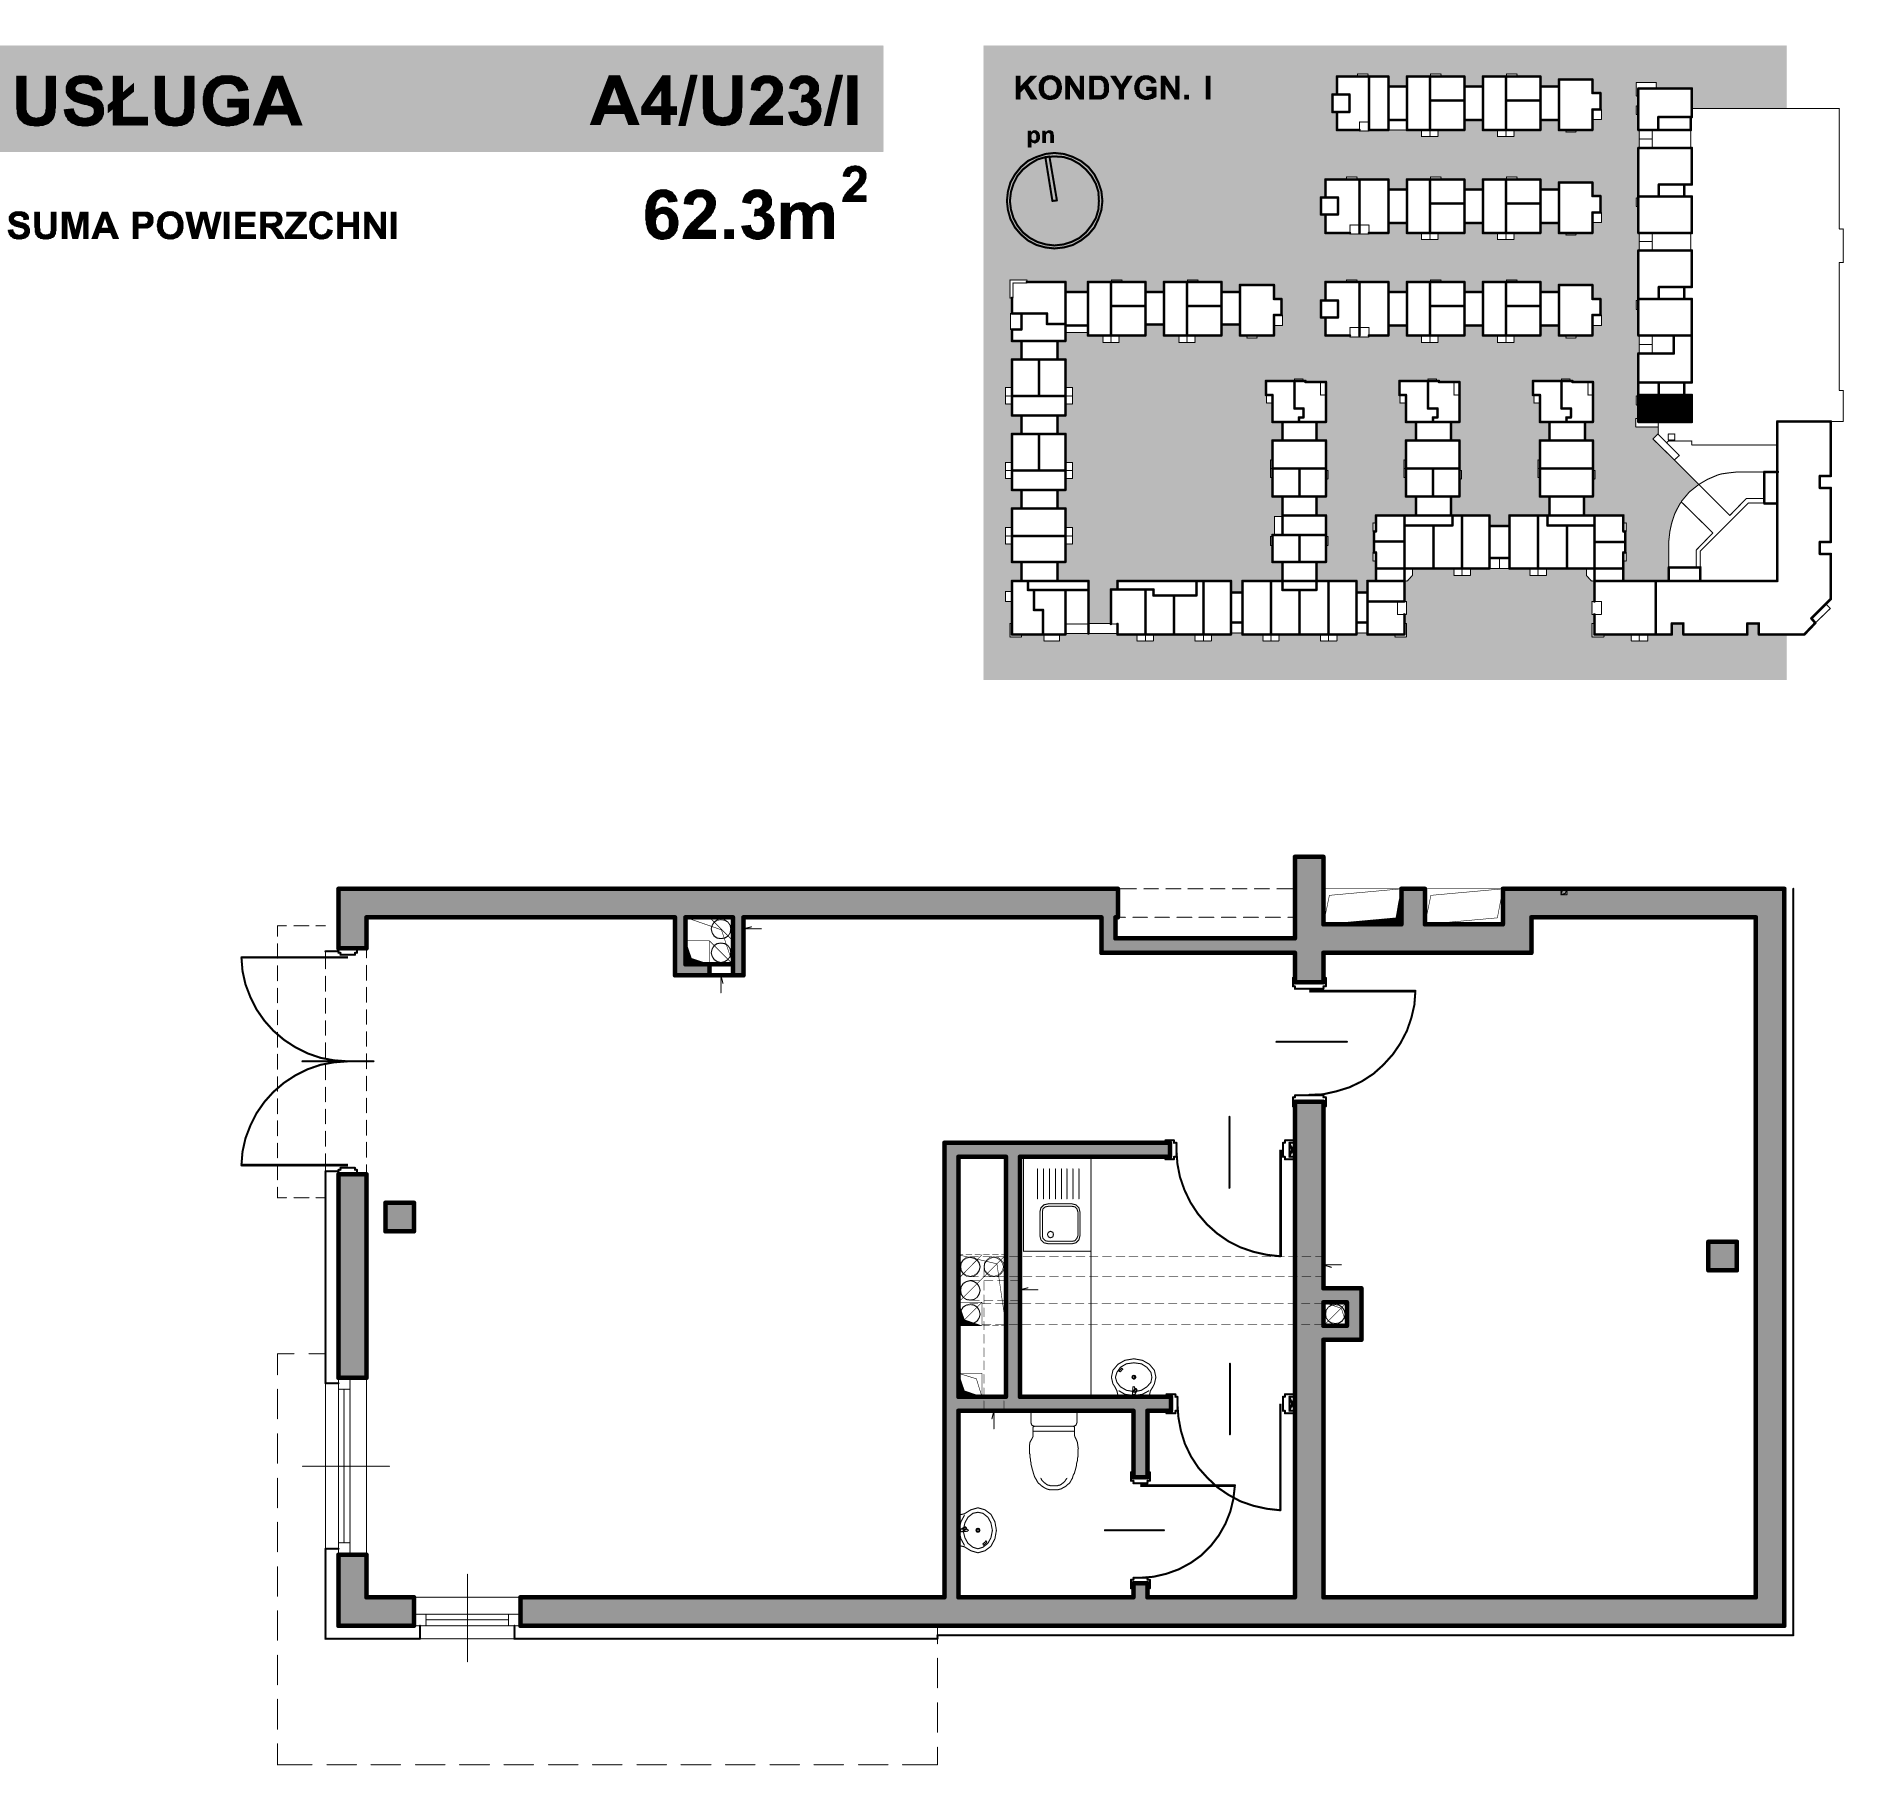 Lokal usługowy A4_U23_I – 62,9 m2